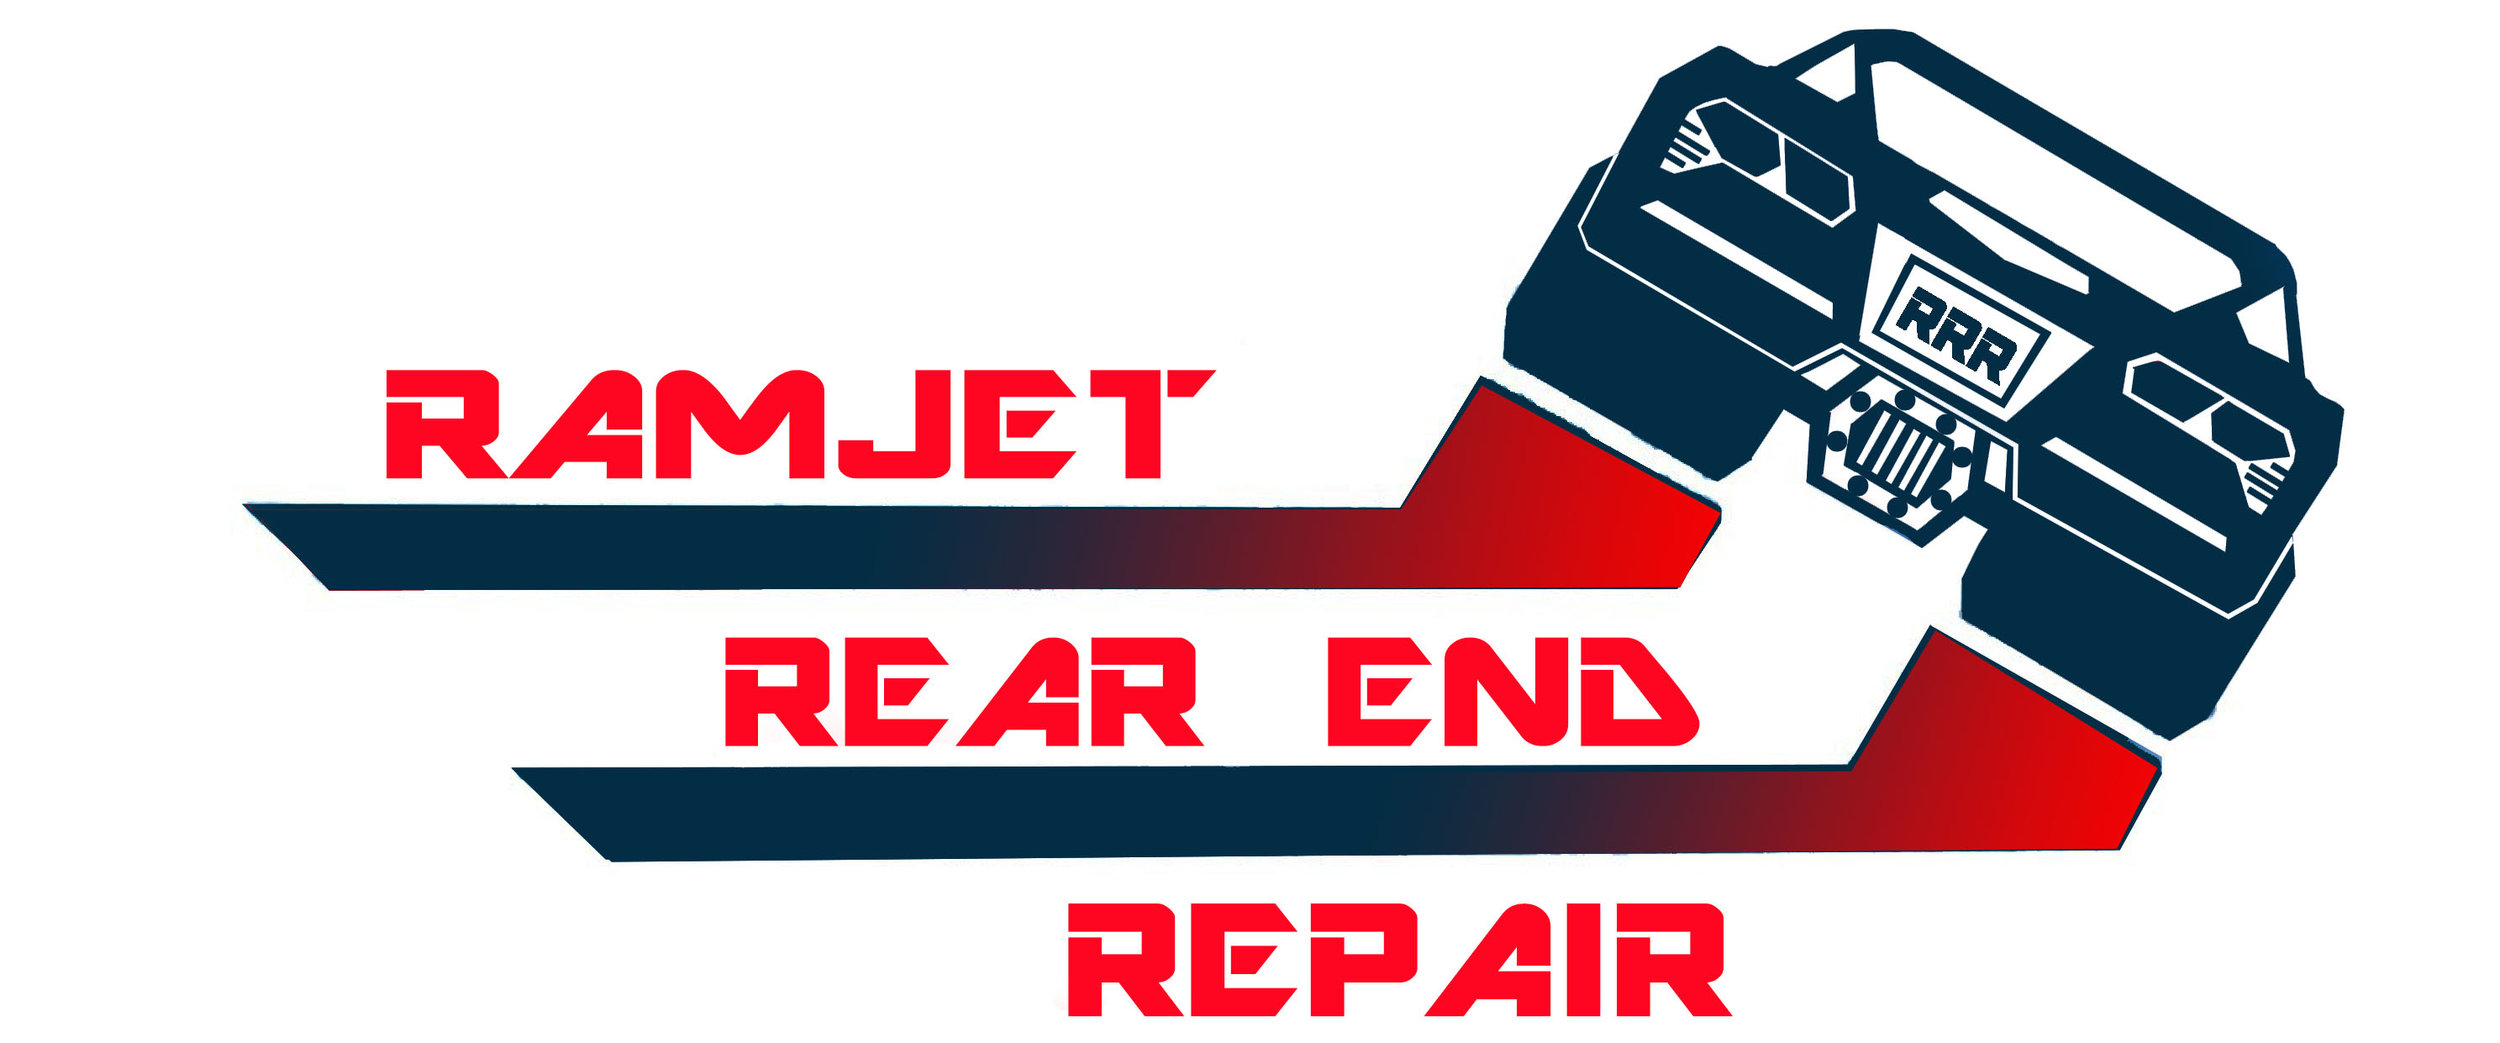 Ramjet Rear End Repair